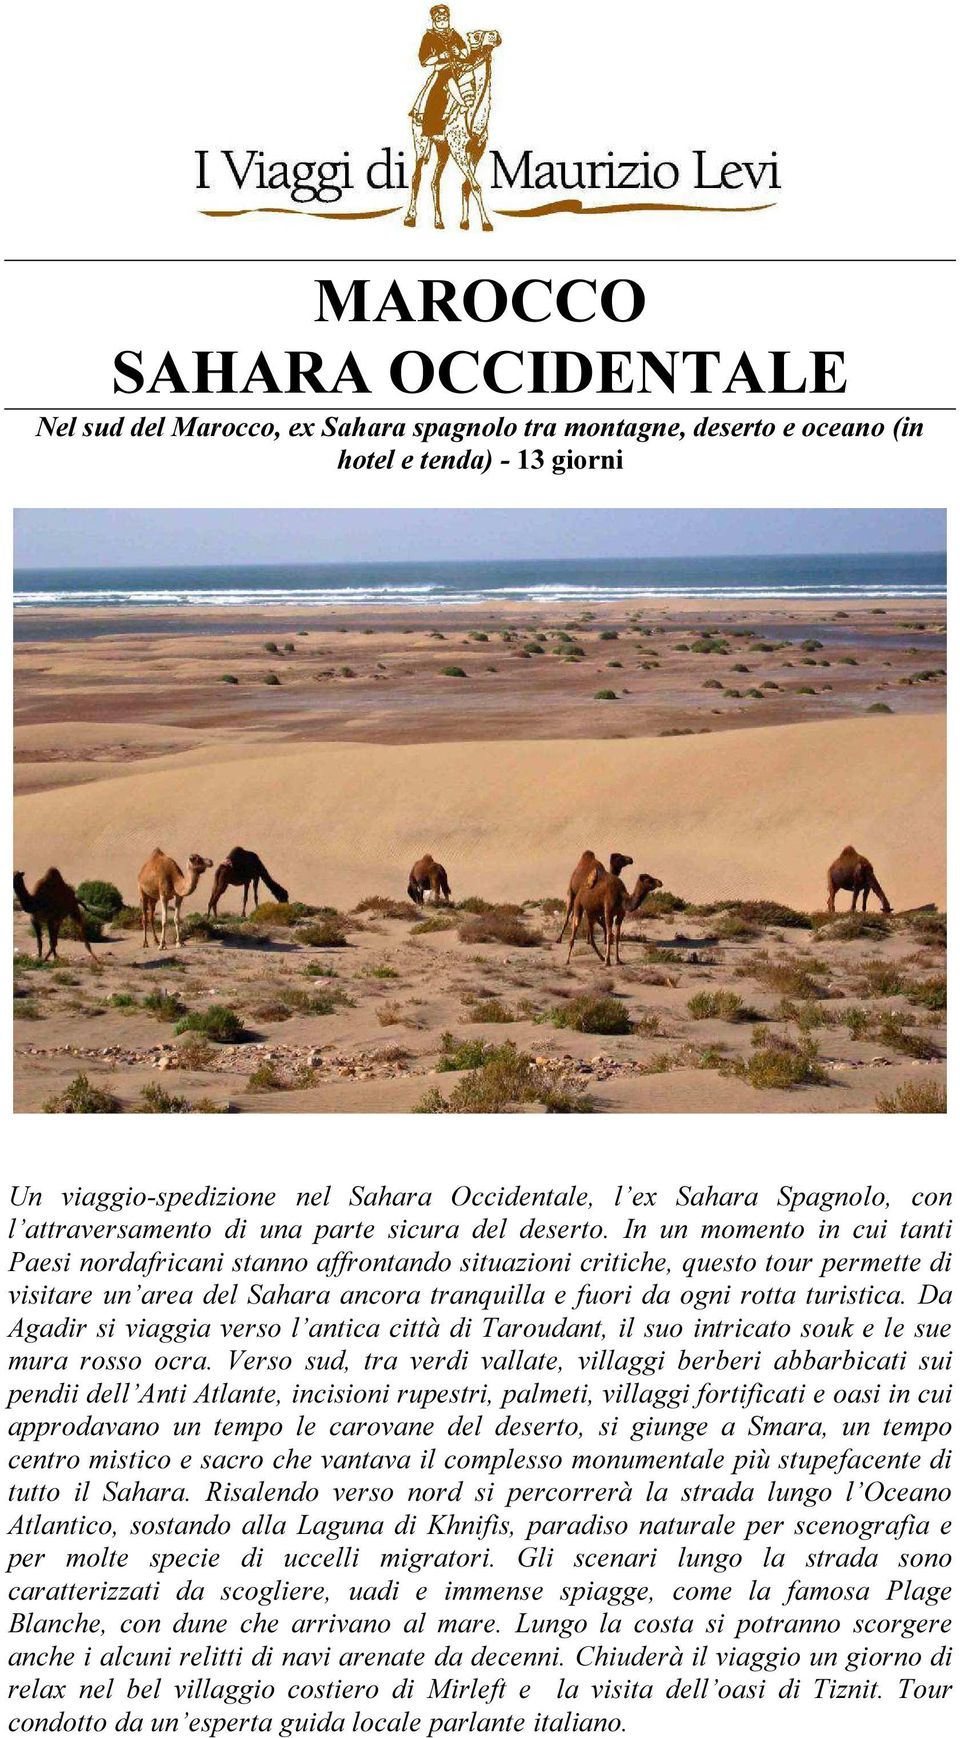 In un momento in cui tanti Paesi nordafricani stanno affrontando situazioni critiche, questo tour permette di visitare un area del Sahara ancora tranquilla e fuori da ogni rotta turistica.